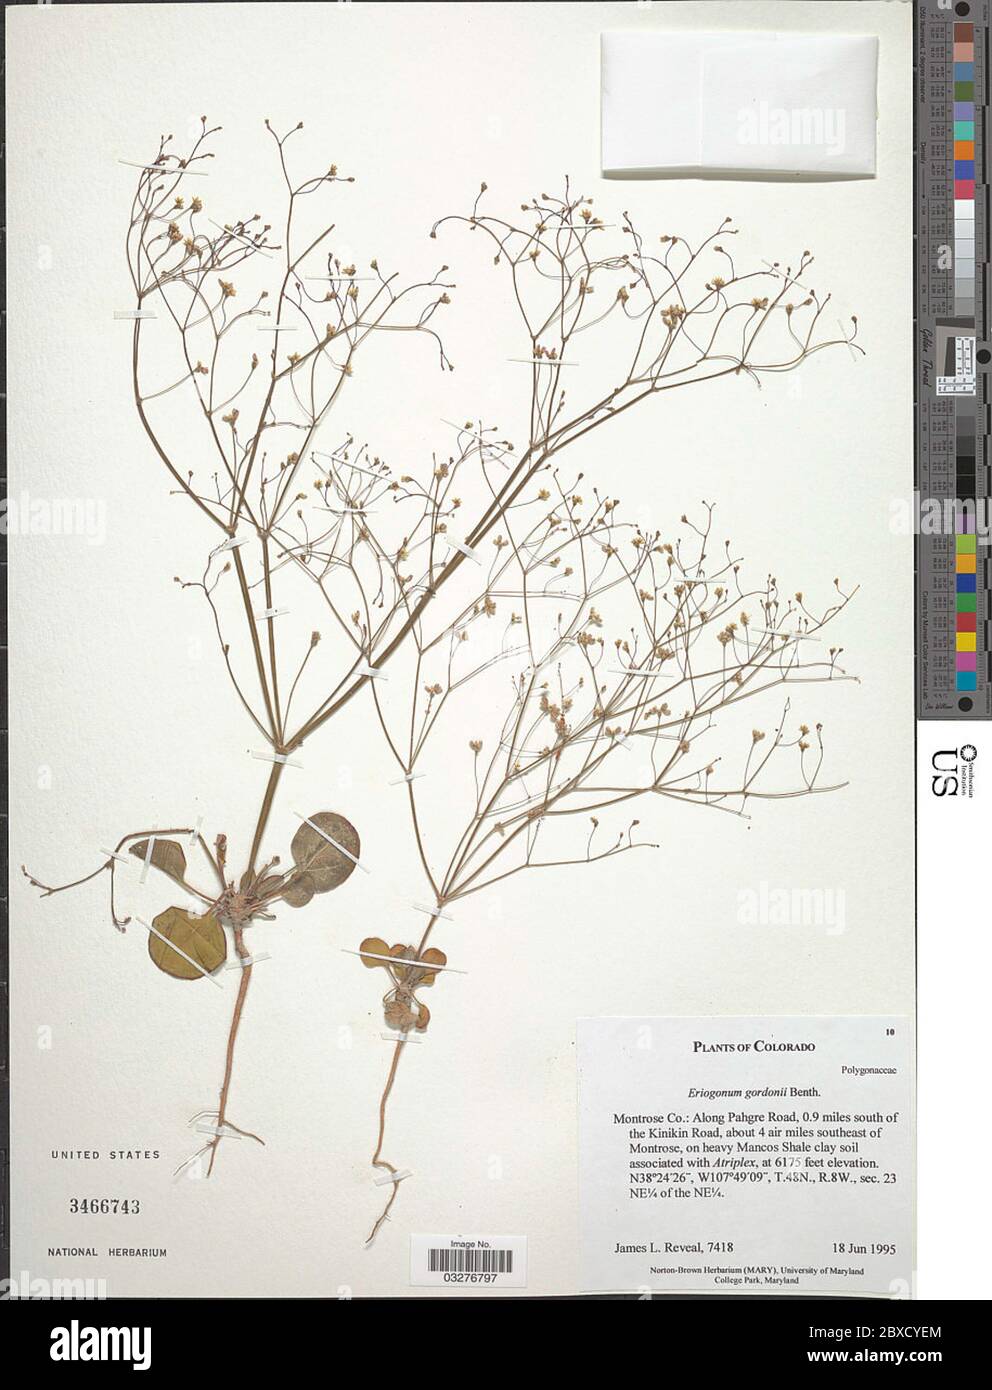 Eriogonum gordonii Benth Eriogonum gordonii Benth. Stock Photo